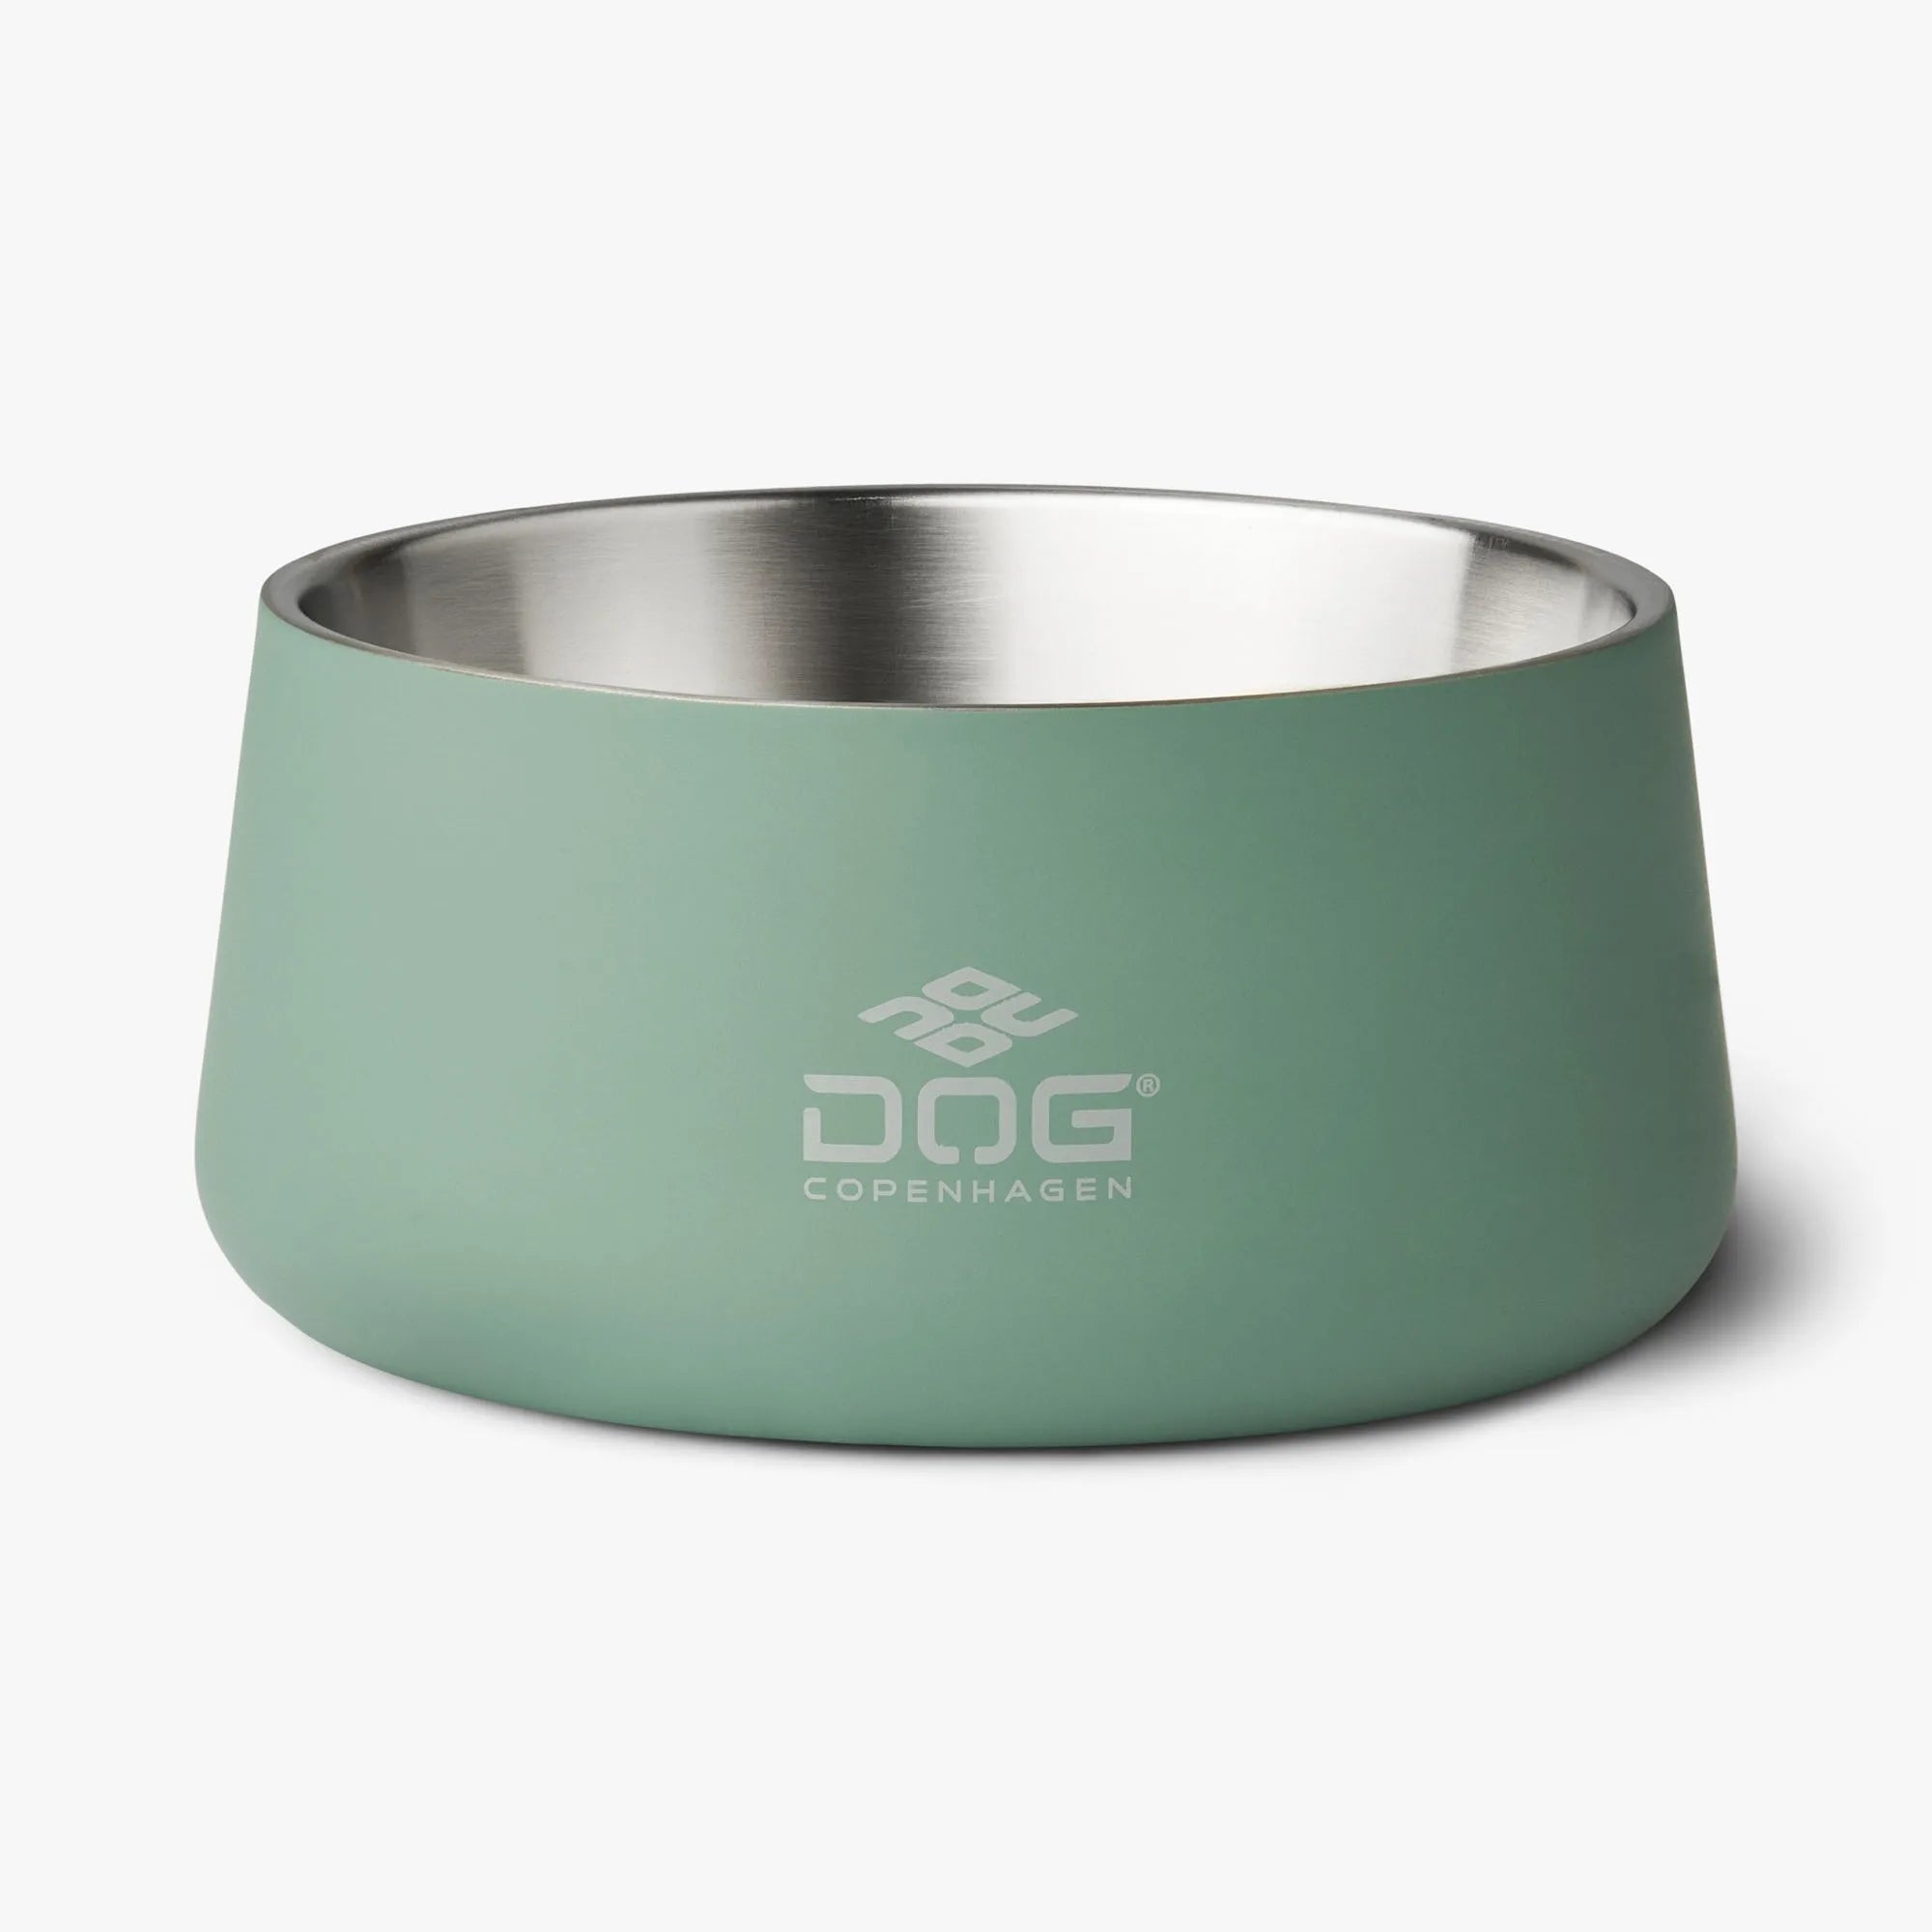 Billede af Dog copenhagen - DOG Copenhagen Vega Skål, Farve : Mintgrøn - 1400ML - Pet Bowls, Feeders & Waterers